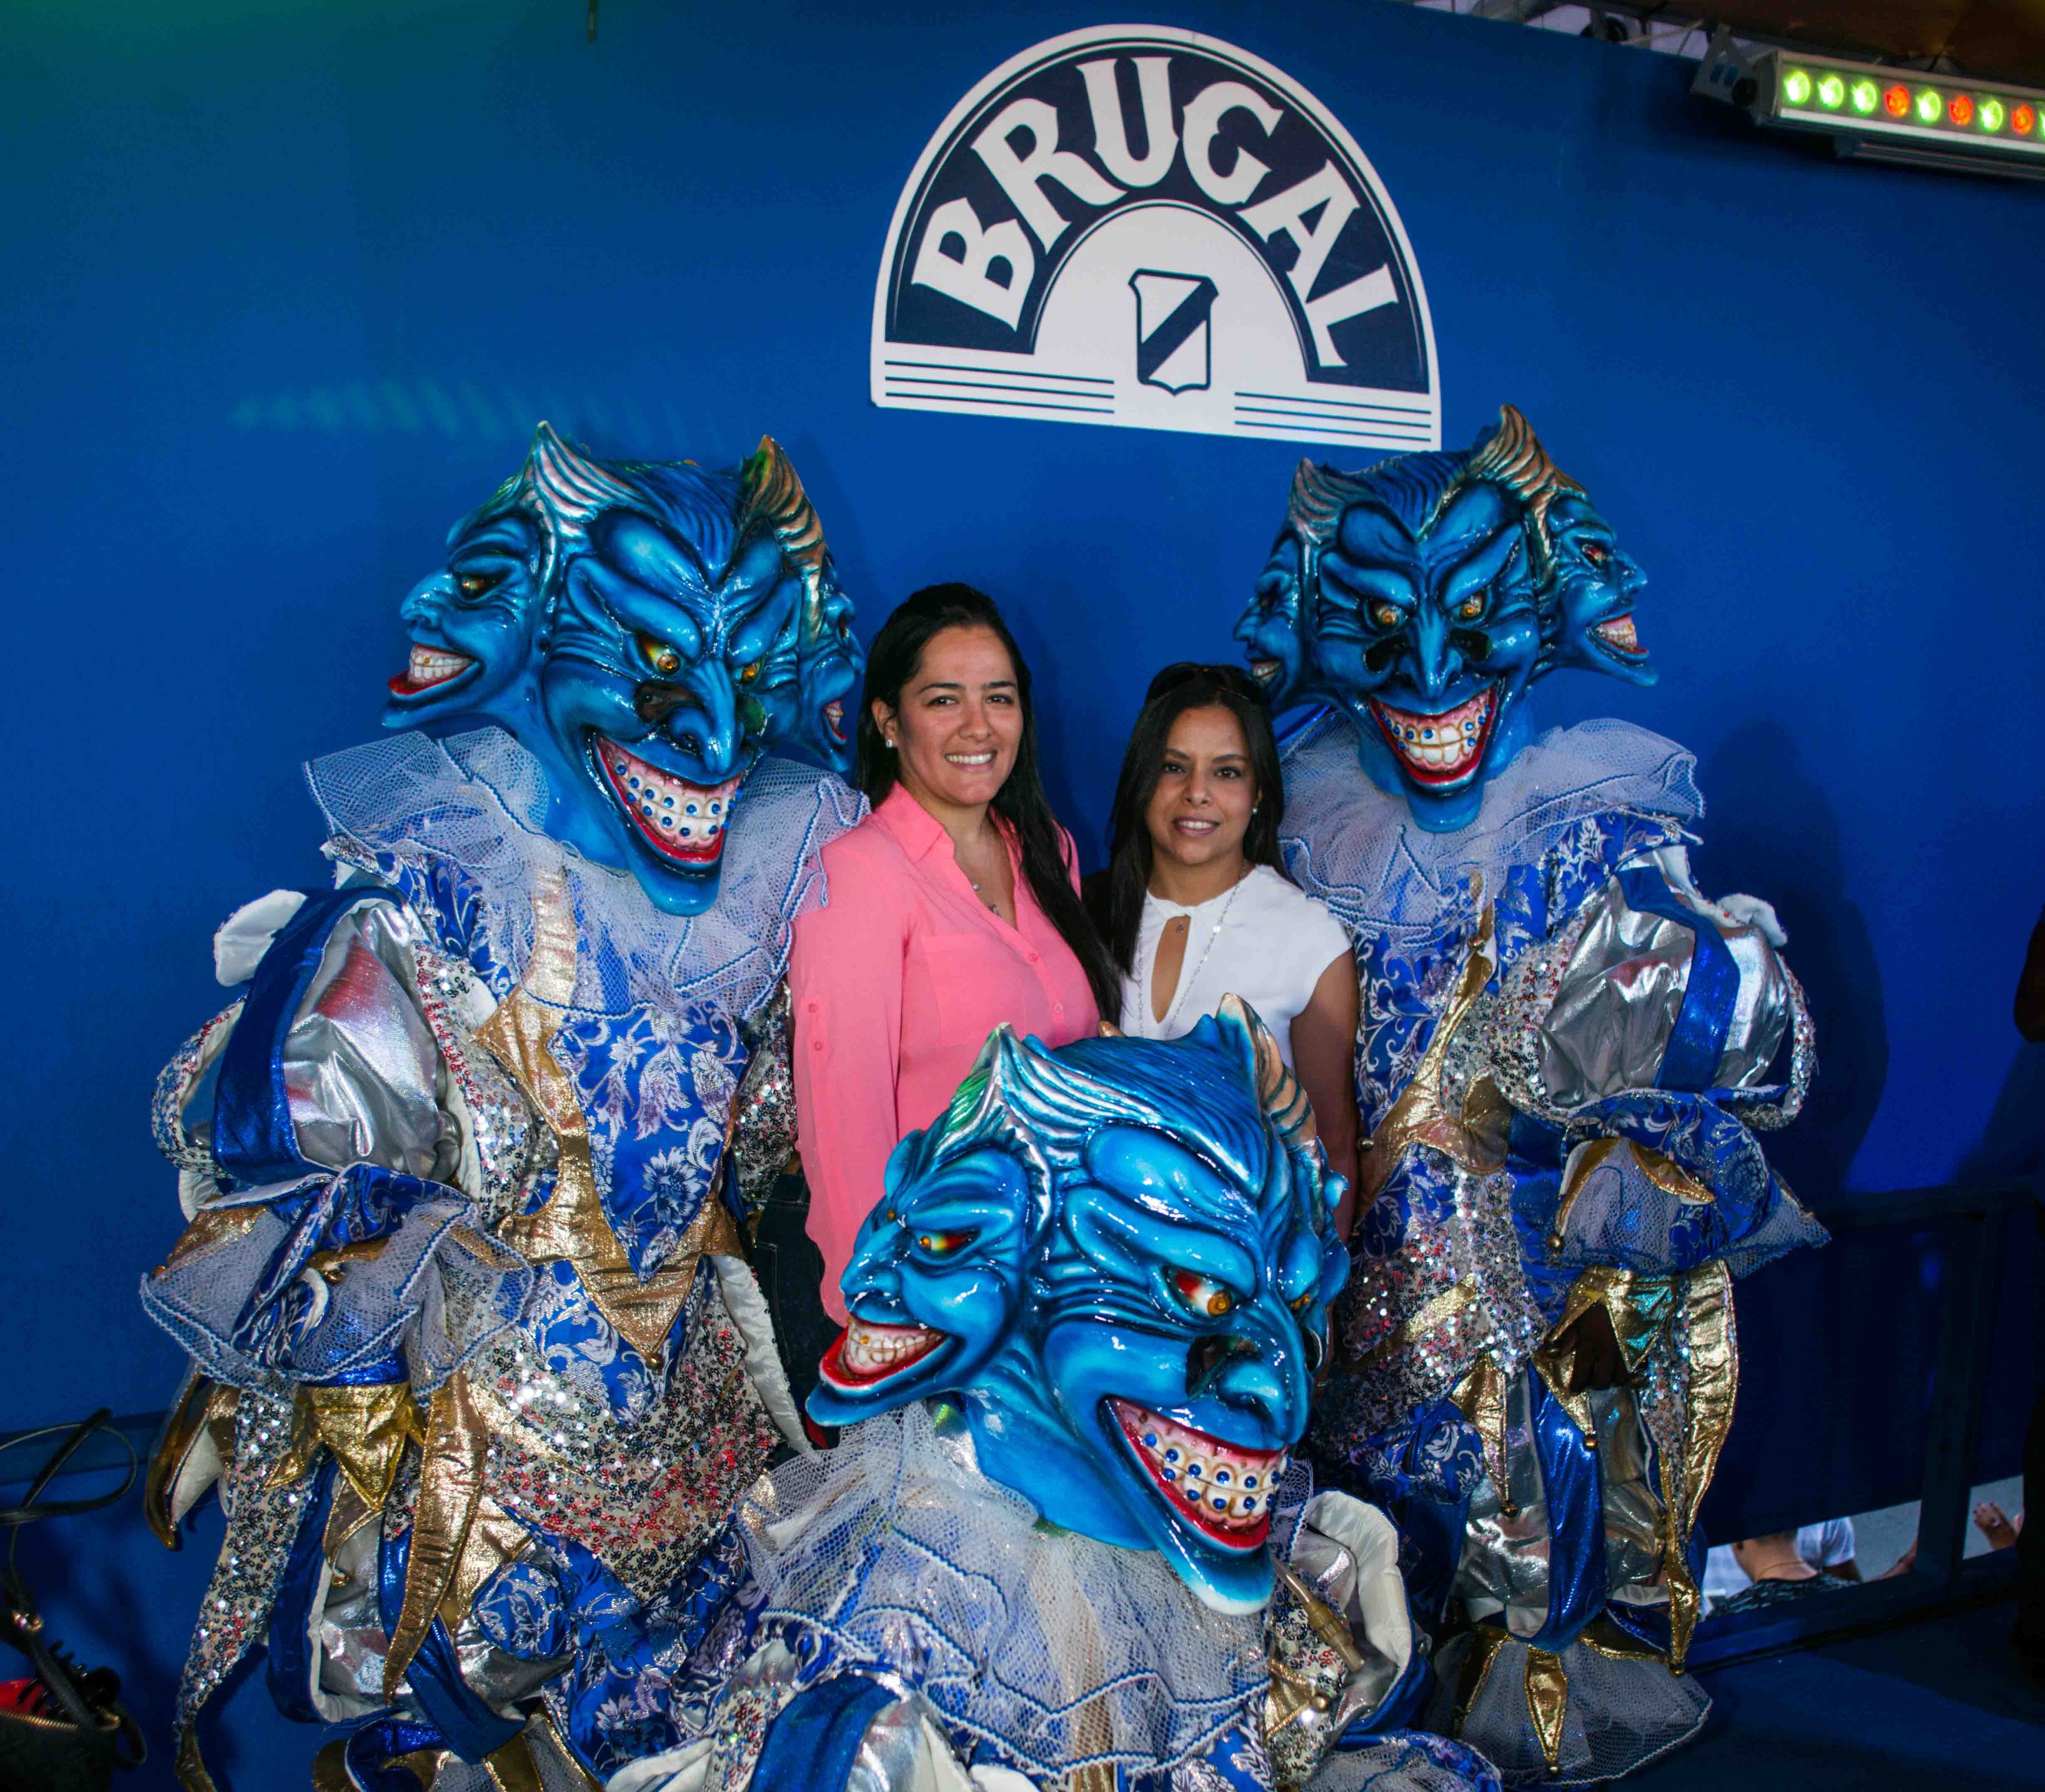 Brugal es el ron oficial del Carnaval de Punta Cana